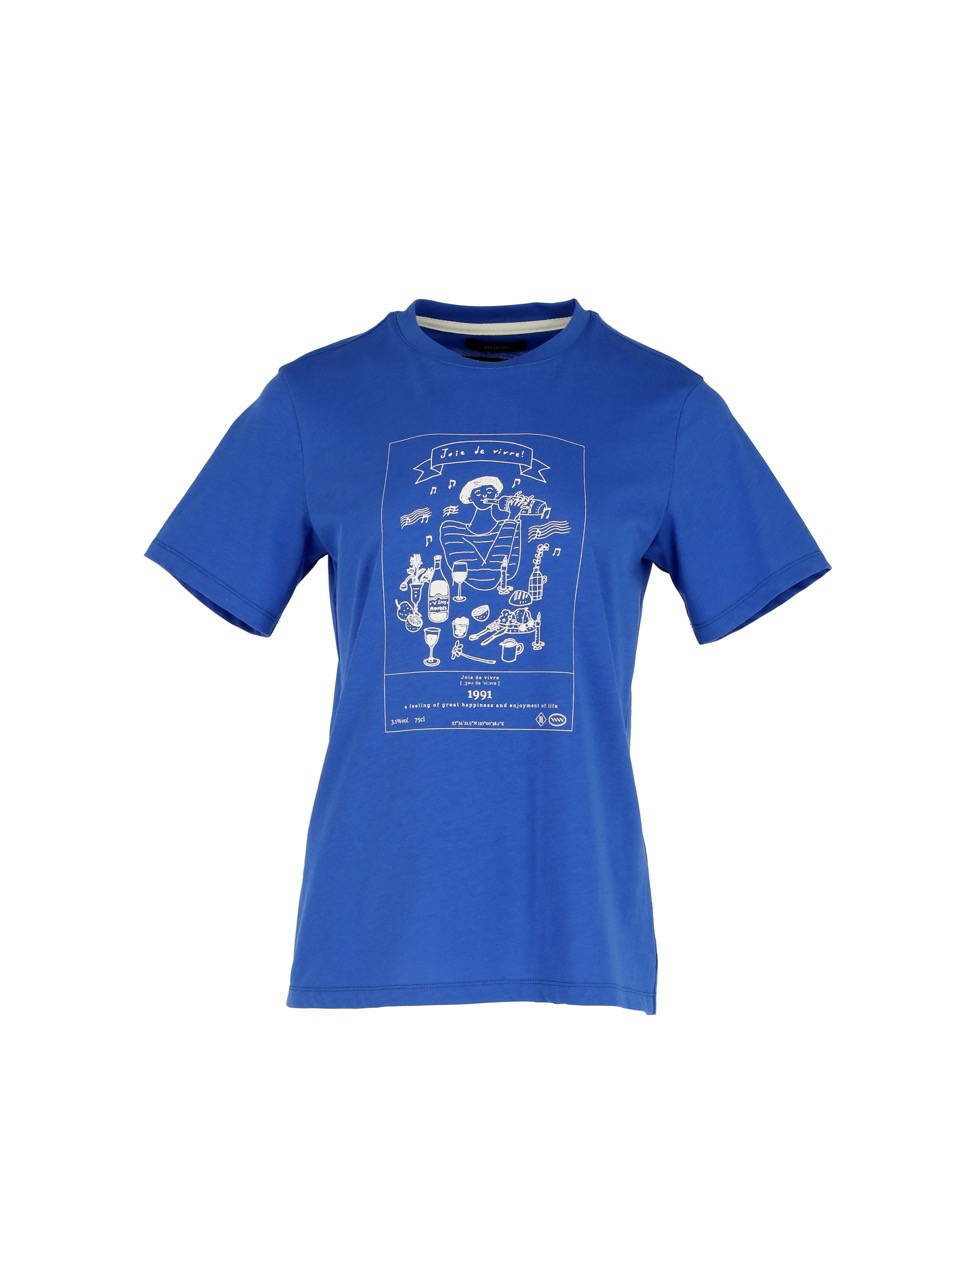 [VIMUN X hier et demain] Joie de vivre T-shirt - Cobalt blue